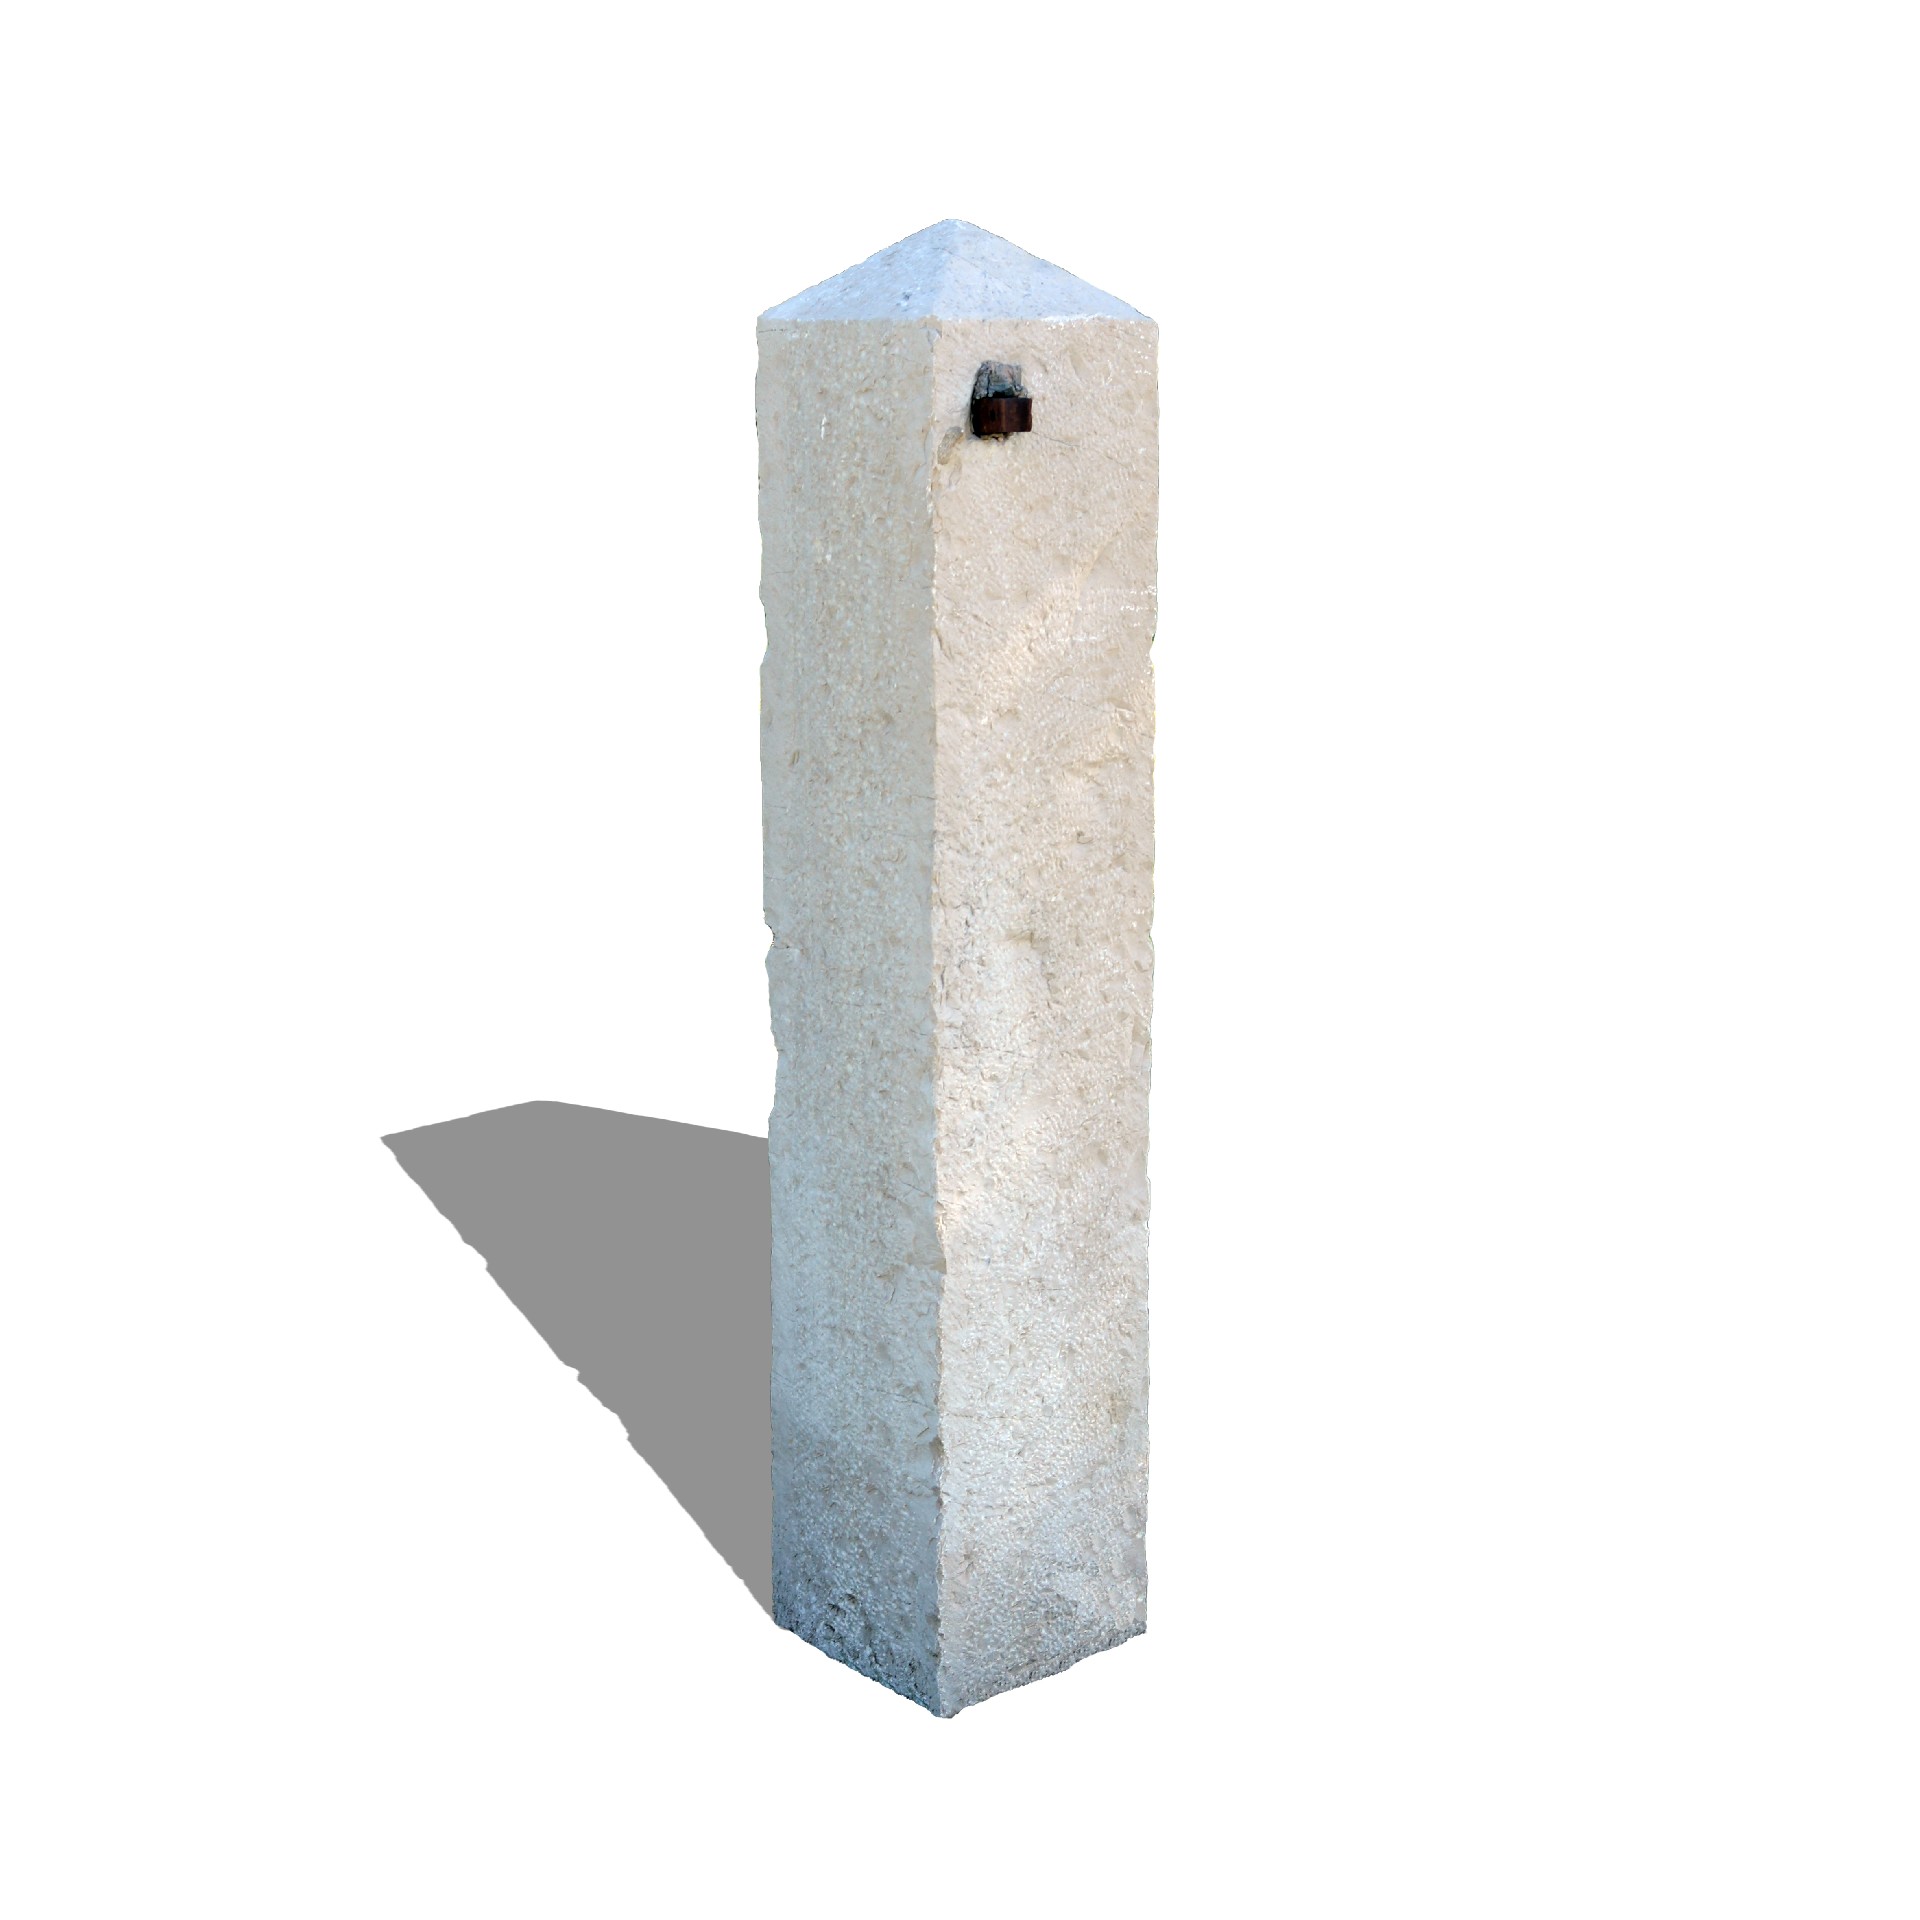 Antica colonna in pietra. - Colonne antiche - Architettura - Prodotti - Antichità Fiorillo